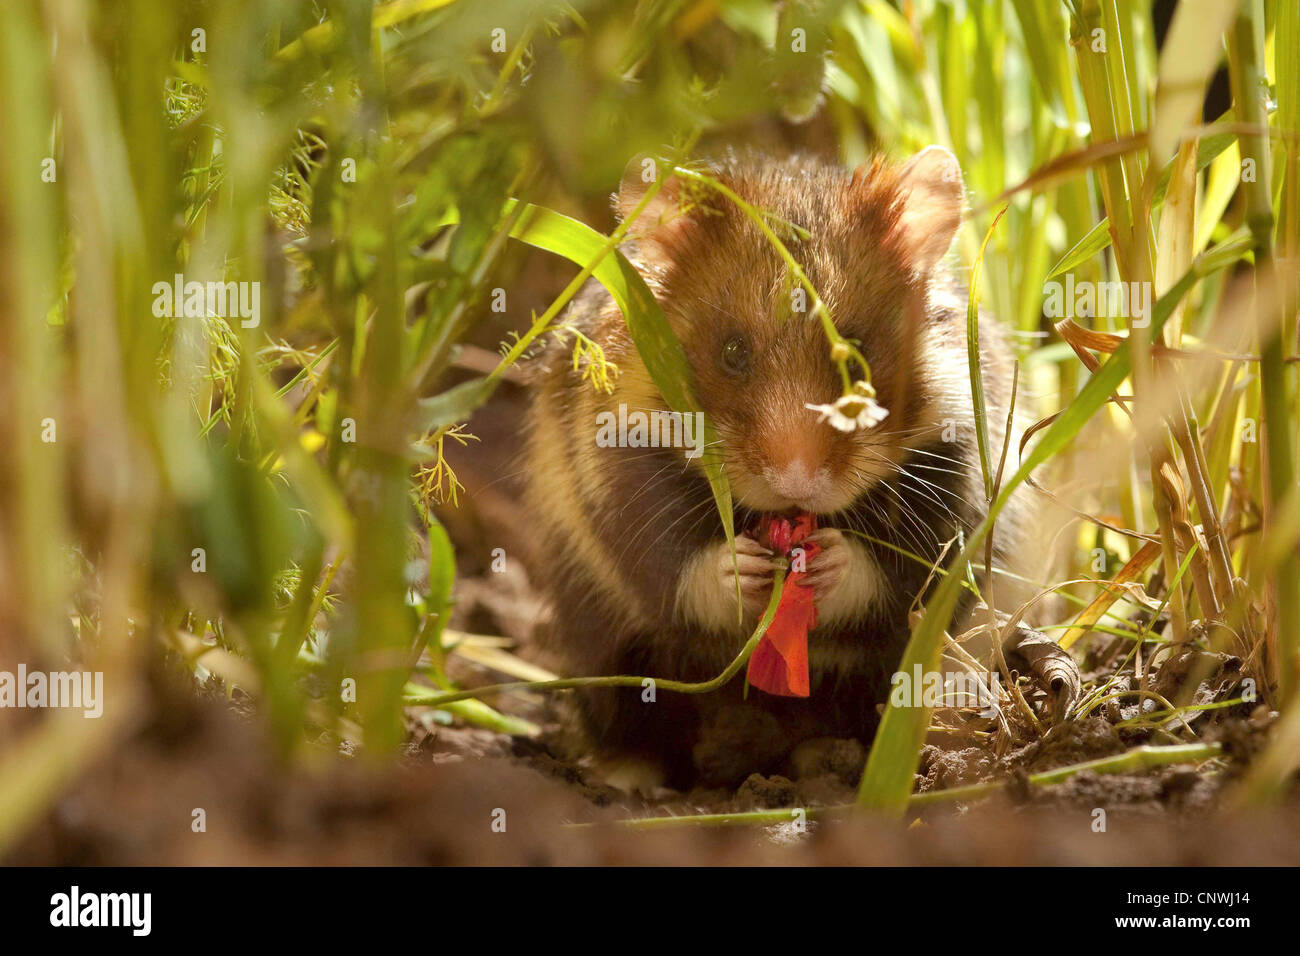 Hamster commun, black-bellied grand hamster (Cricetus cricetus), assis entre les lames du grain, de manger une fleur de pavot commun, Allemagne Banque D'Images